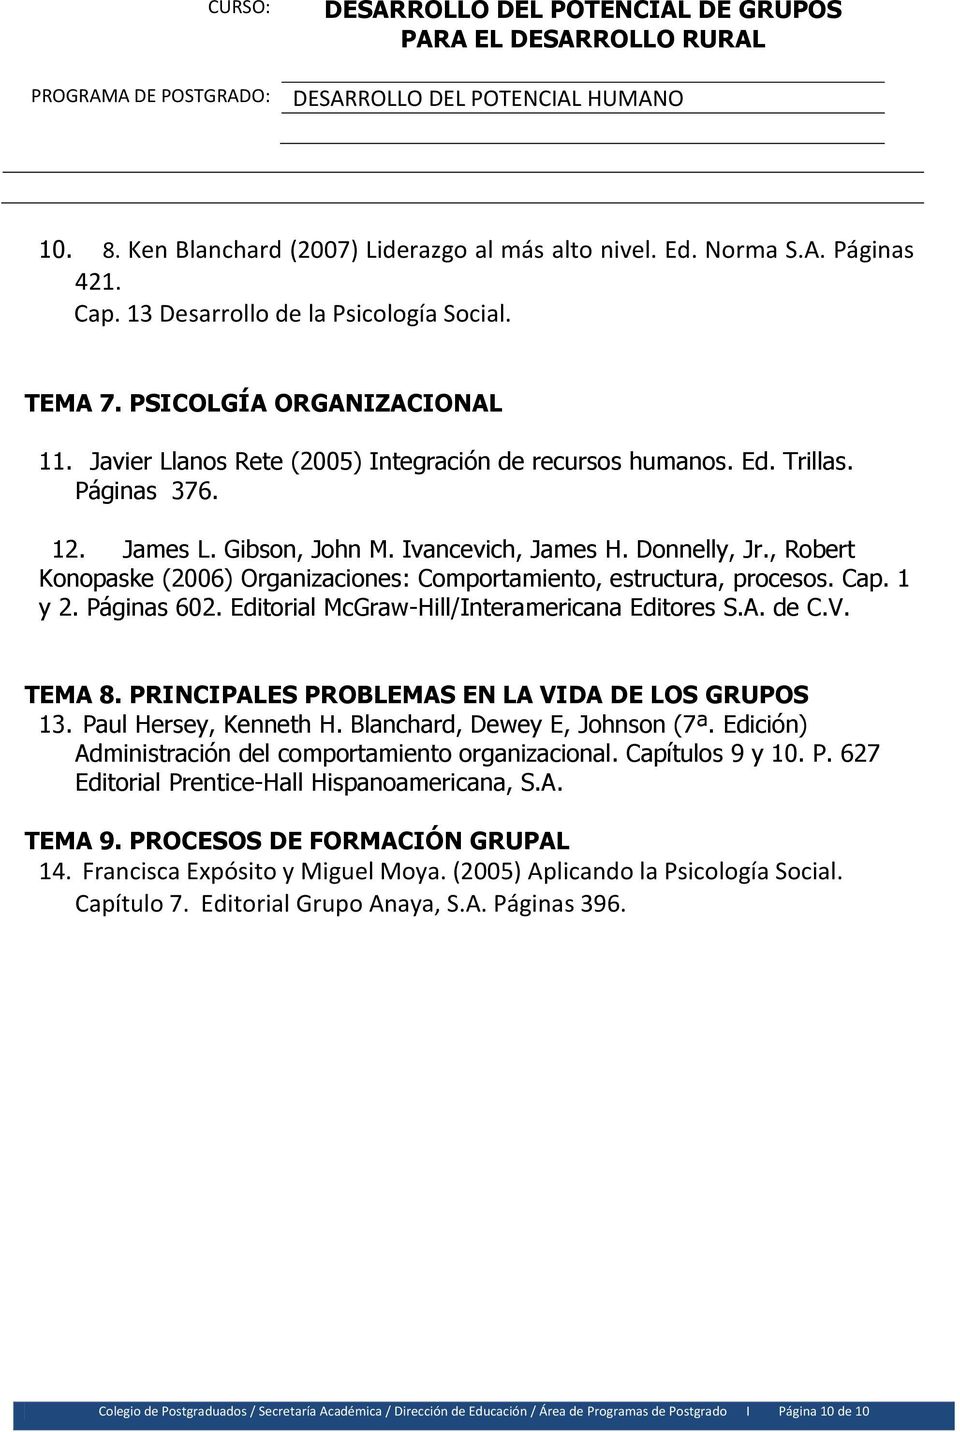 , Robert Konopaske (2006) Organizaciones: Comportamiento, estructura, procesos. Cap. 1 y 2. Páginas 602. Editorial McGraw-Hill/Interamericana Editores S.A. de C.V. TEMA 8.